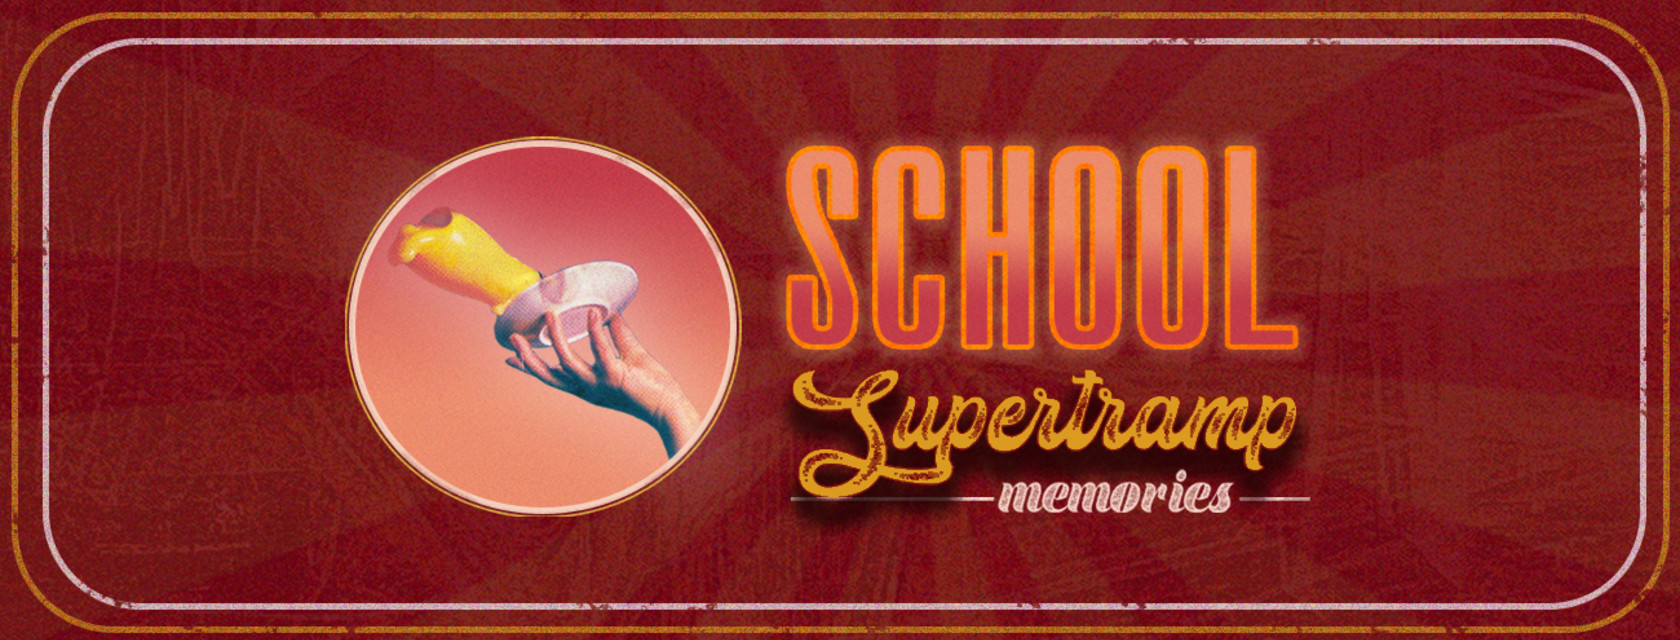 School - Supertramp Memories de retour à l’Amphithéâtre Cogeco pour la saison estivale 2023!